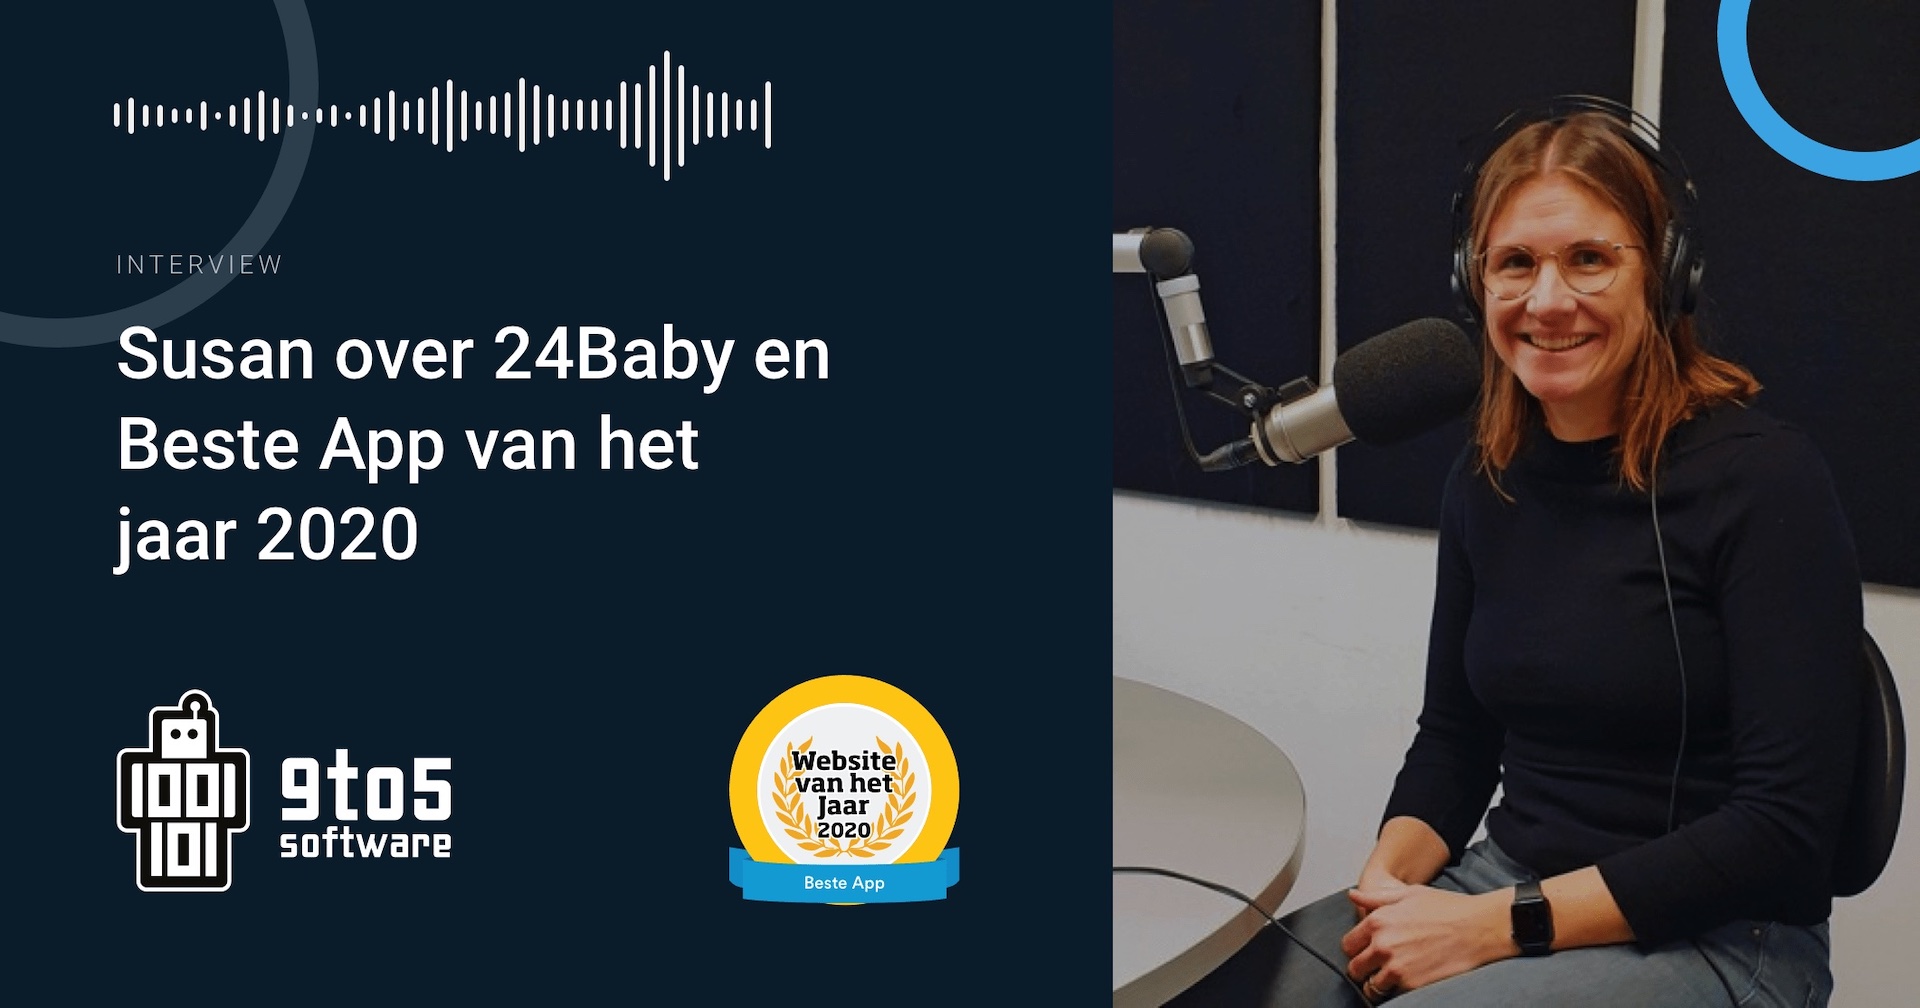 9to5 bij Stadsradio Delft - Susan Pesman vertelt op Stadsradio Delft over de gewonnen award voor Beste App van het Jaar 2020 samen met onze partner 24Baby